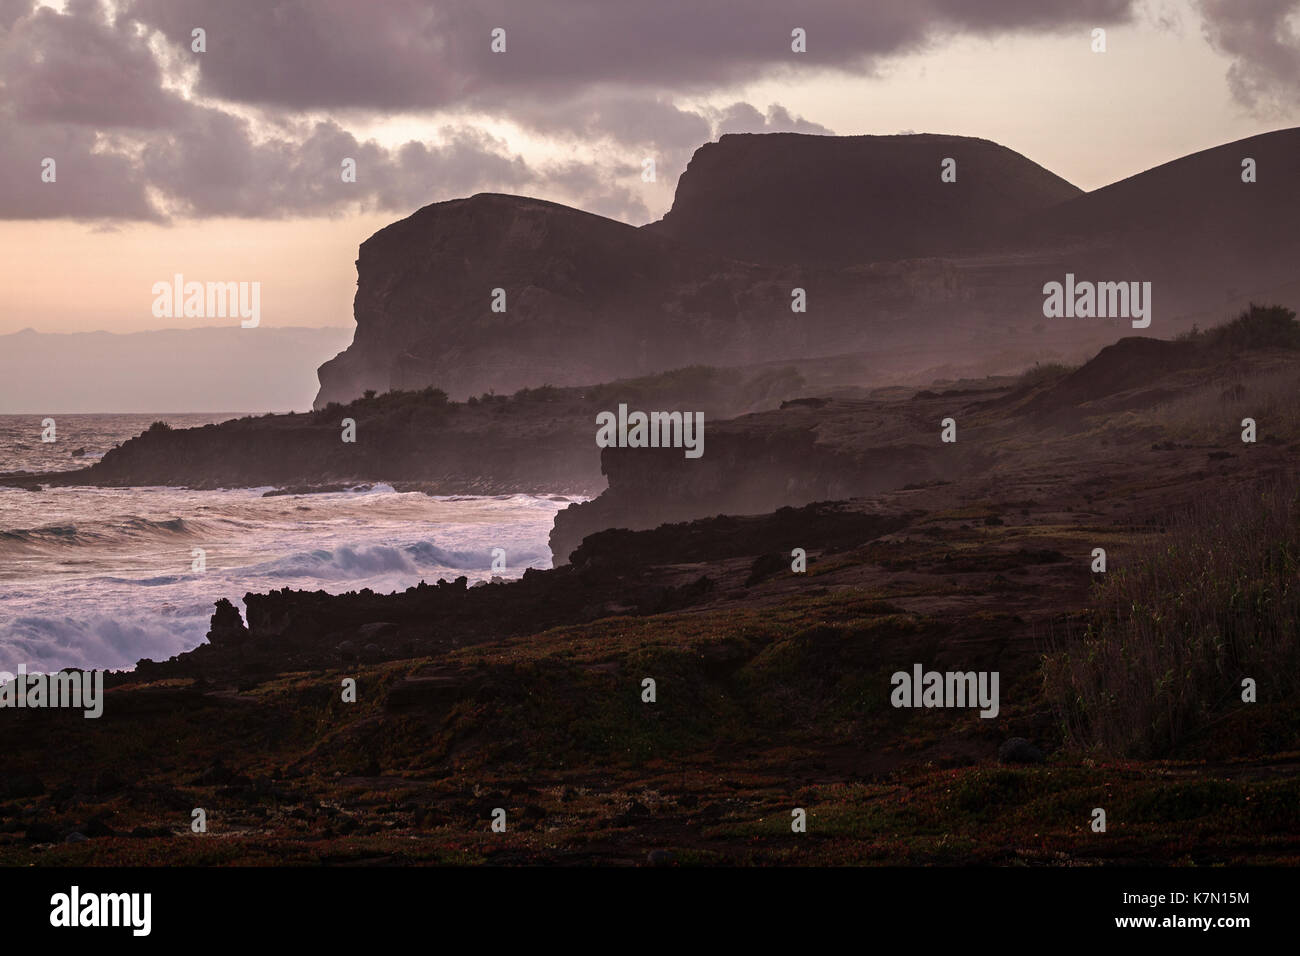 L'autre avec la pierre de lave, volcan capelinhos, Ponta dos capelinhos, lumière du soir, capelo, île de Faial, Açores, Portugal Banque D'Images